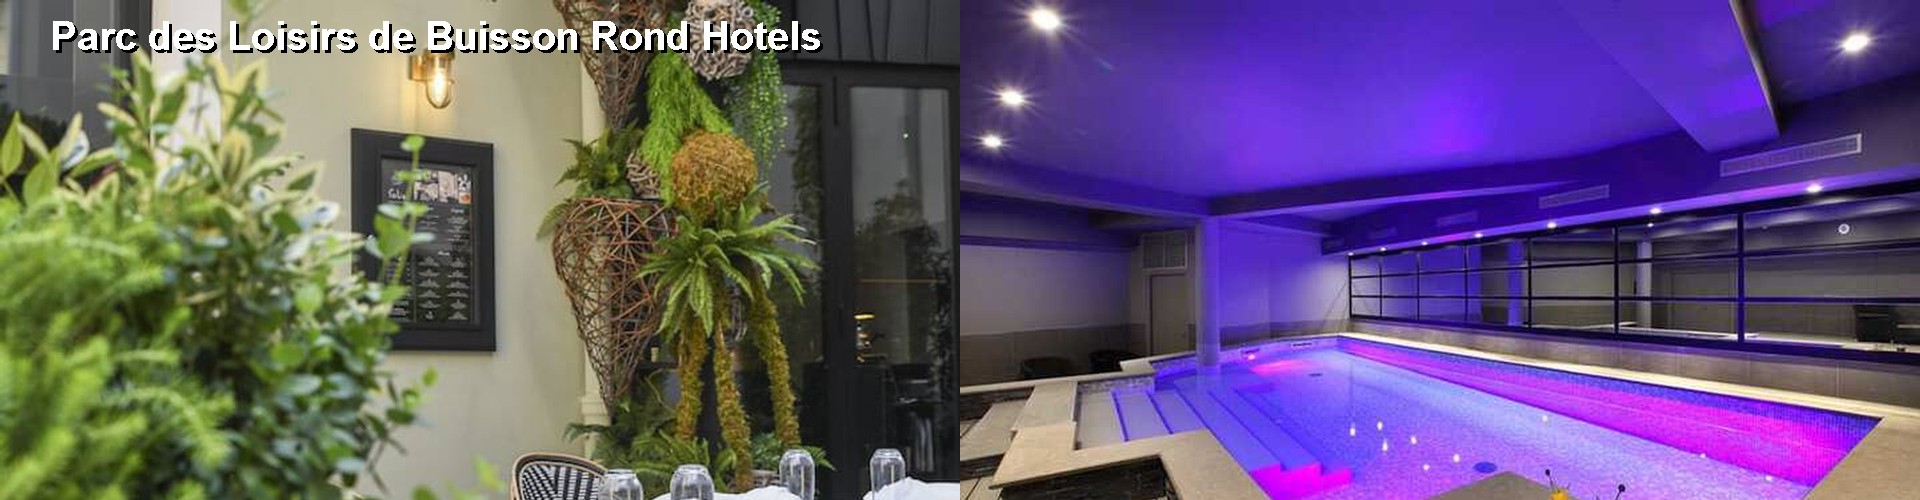 5 Best Hotels near Parc des Loisirs de Buisson Rond